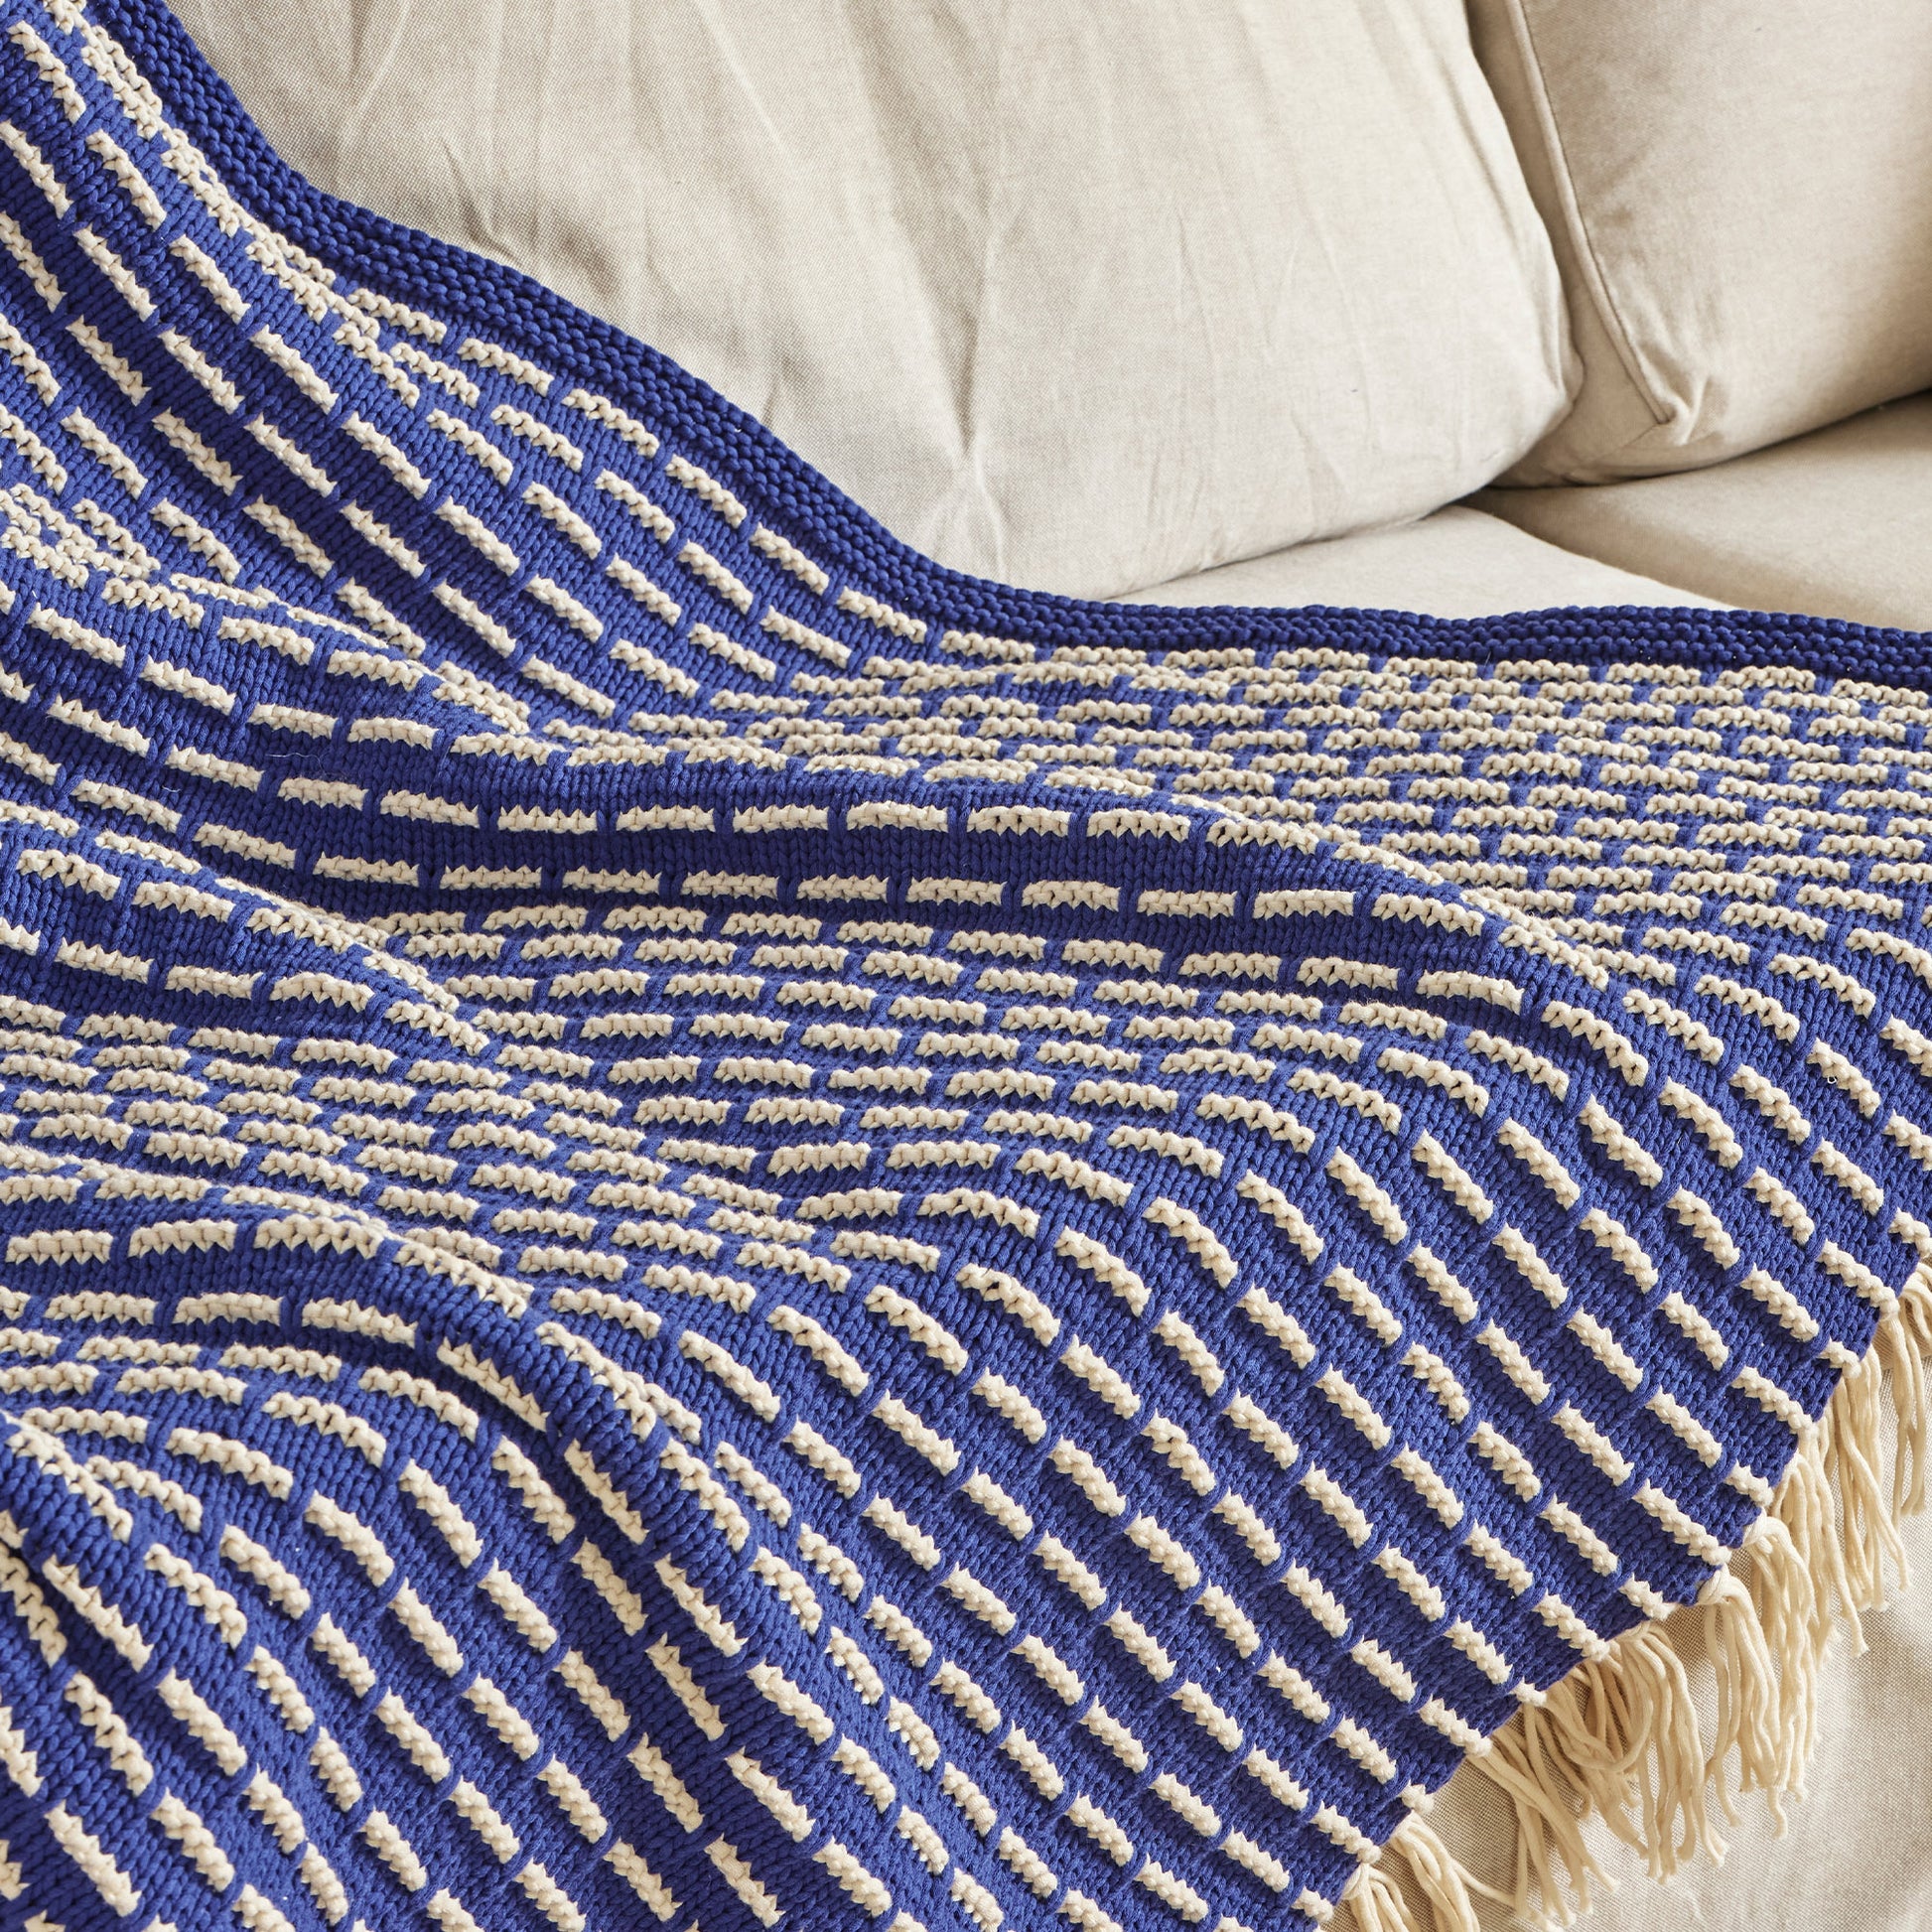 Free Bernat Knit Modern Weave Blanket Pattern